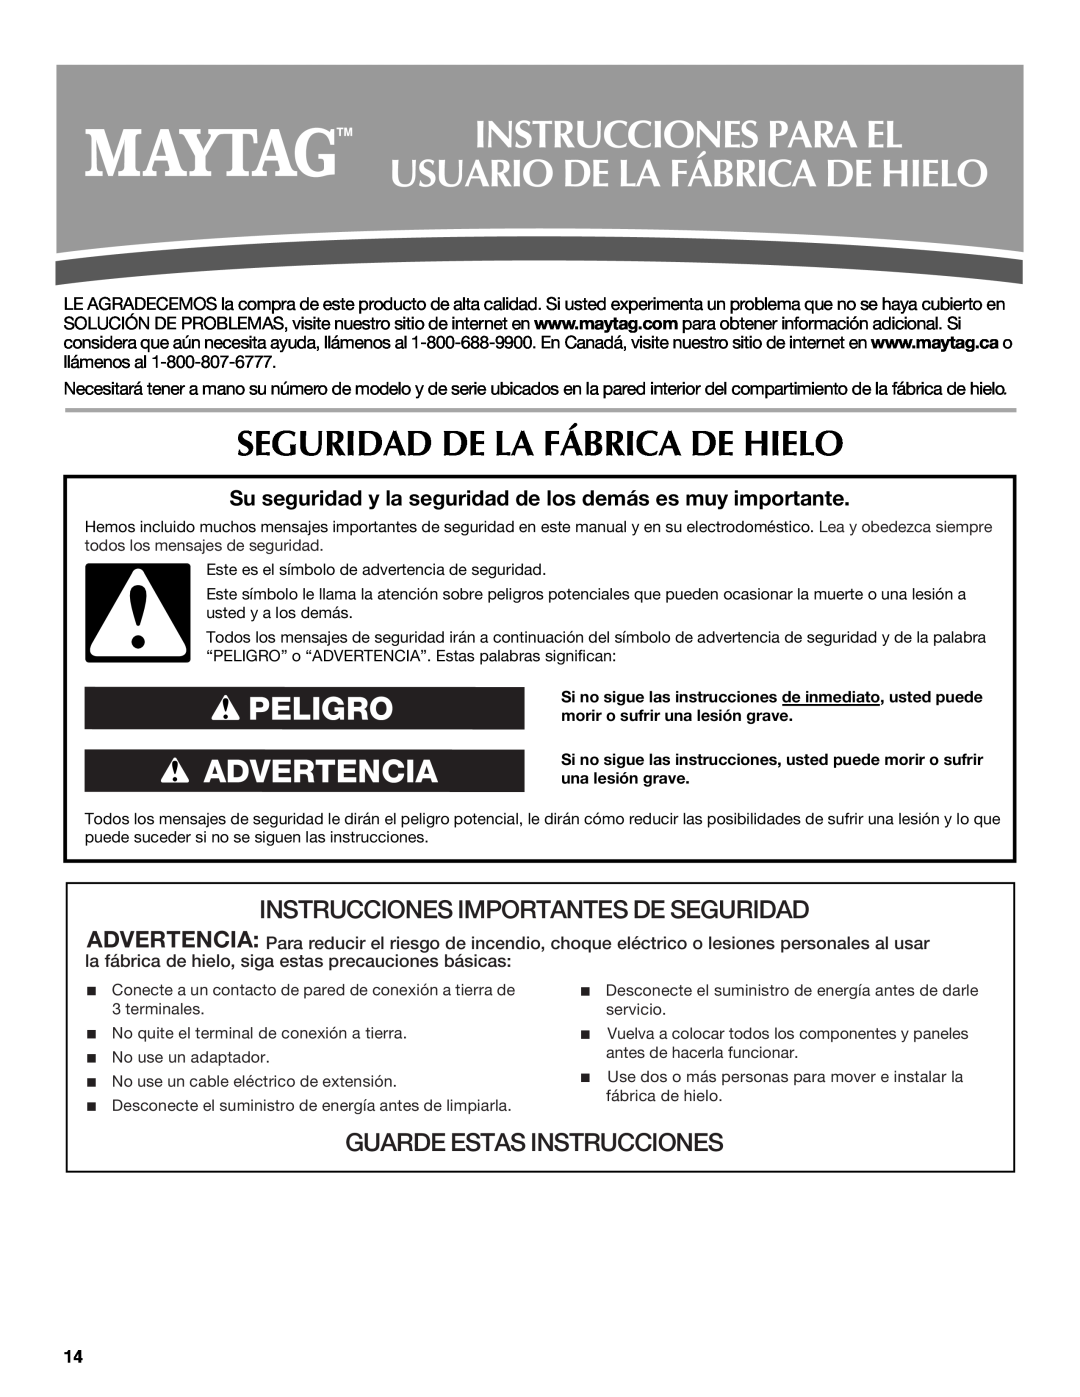 Maytag W10206488A Instrucciones Para El Usuario De La Fábrica De Hielo, Seguridad De La Fábrica De Hielo 